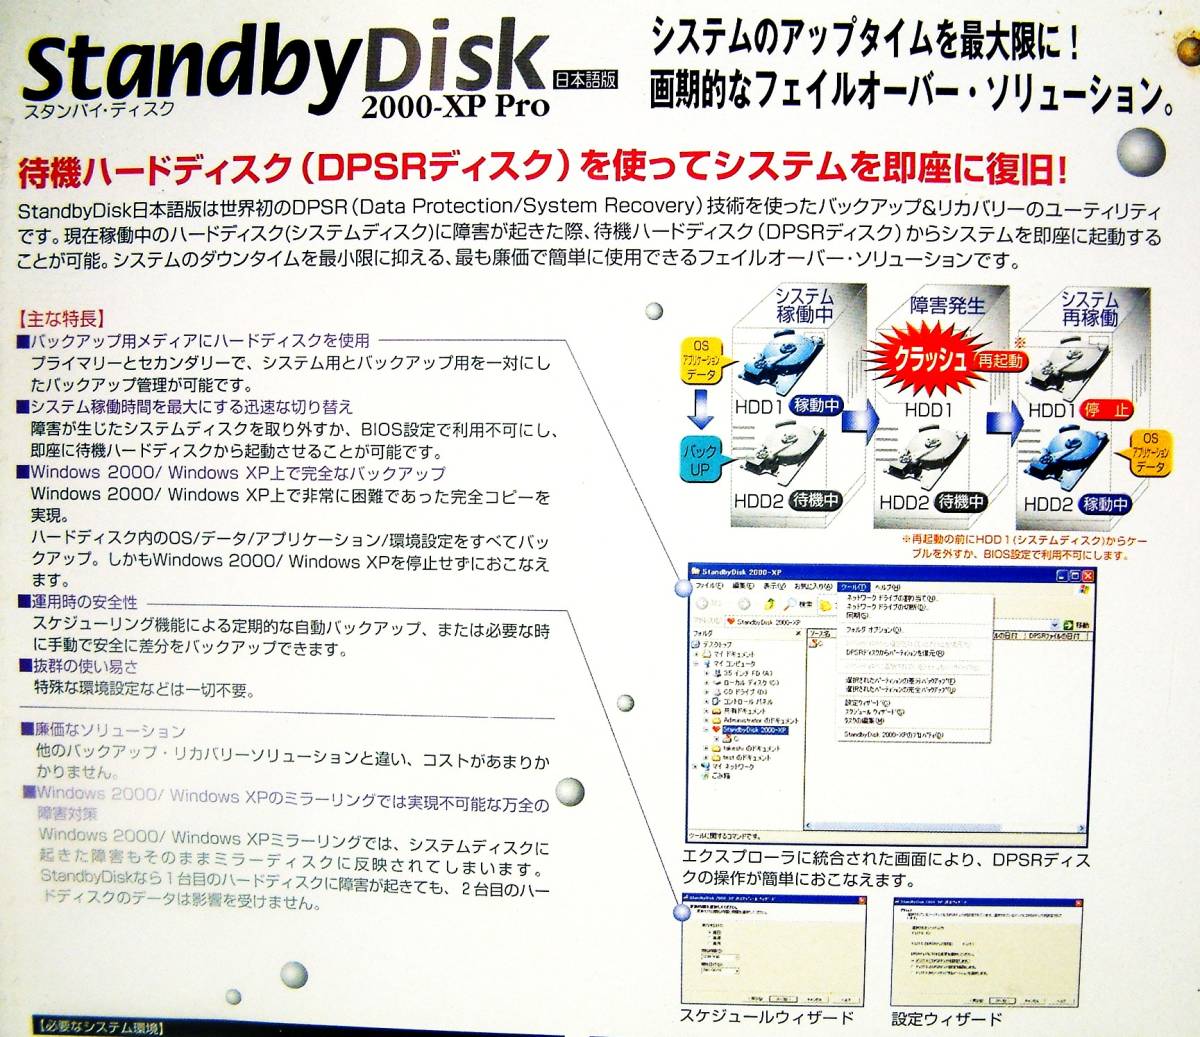 【3106】 NetJapan StanbyDisk 2000-XP Pro Windows用 新品 スタンバイディスク 待機 バックアップ ソフト システム復旧 フェイルオーバー_画像2